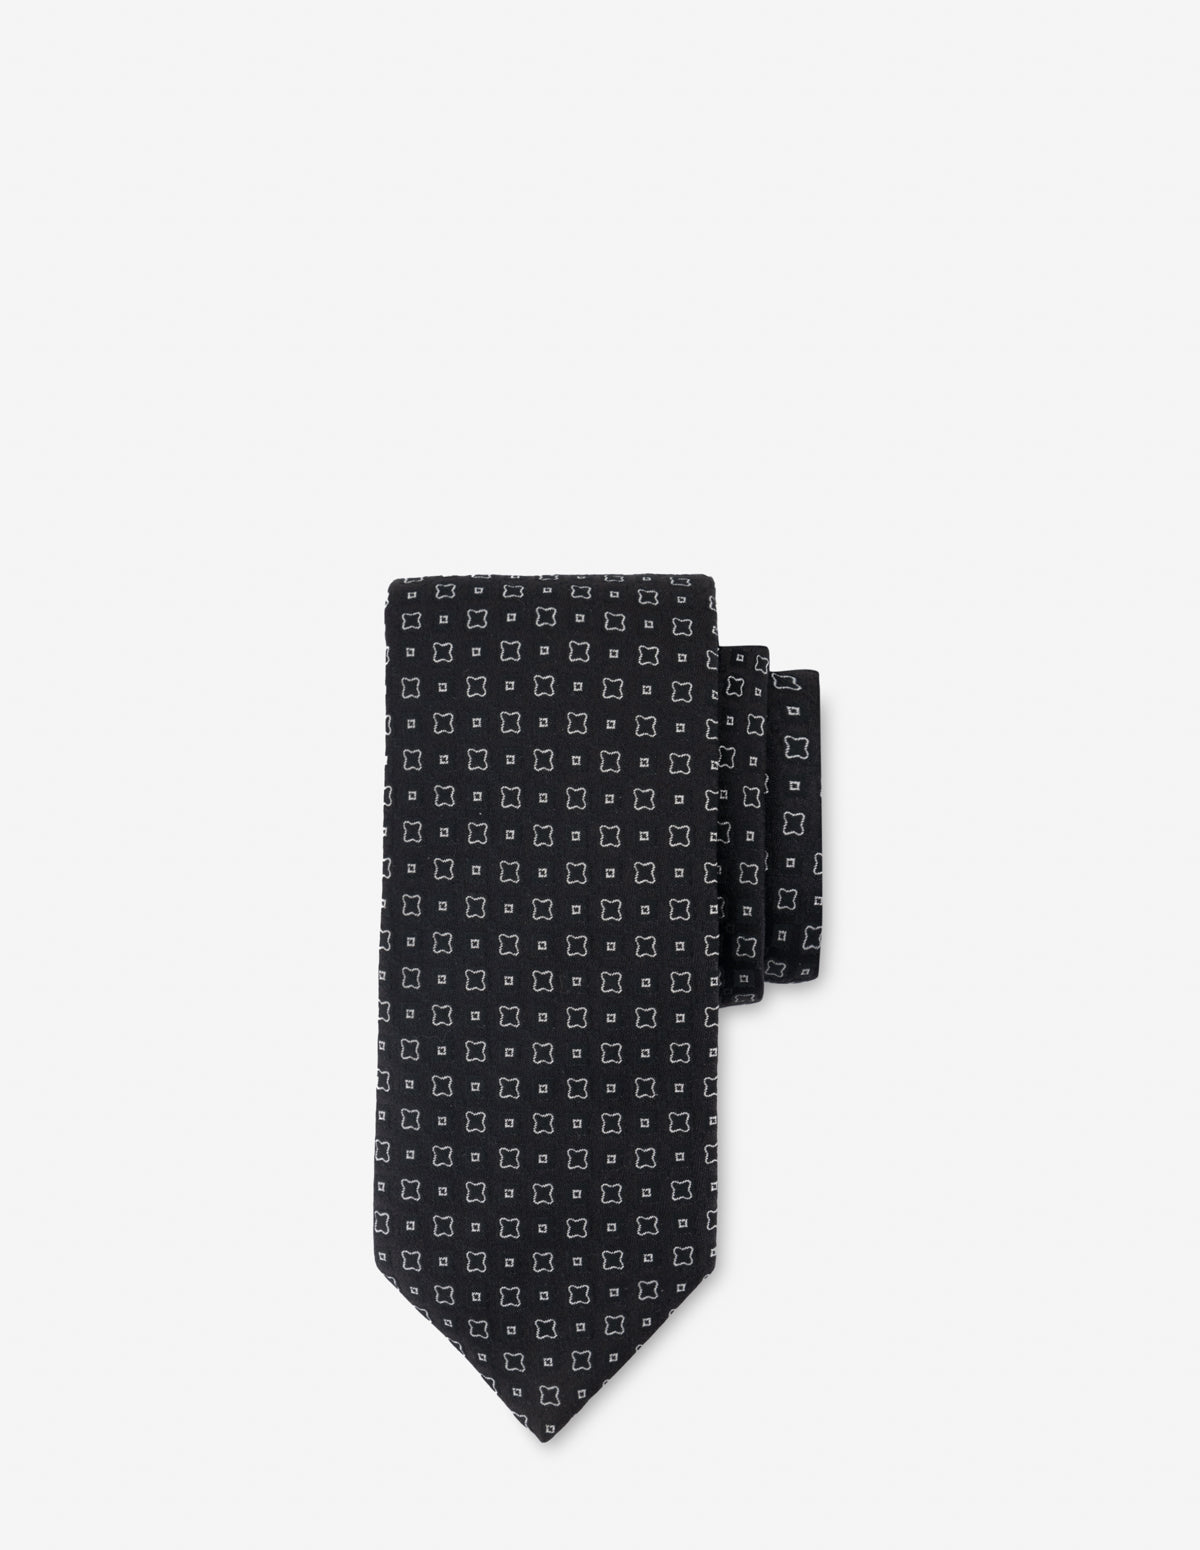 Corbata textil en color negro con formas en contraste